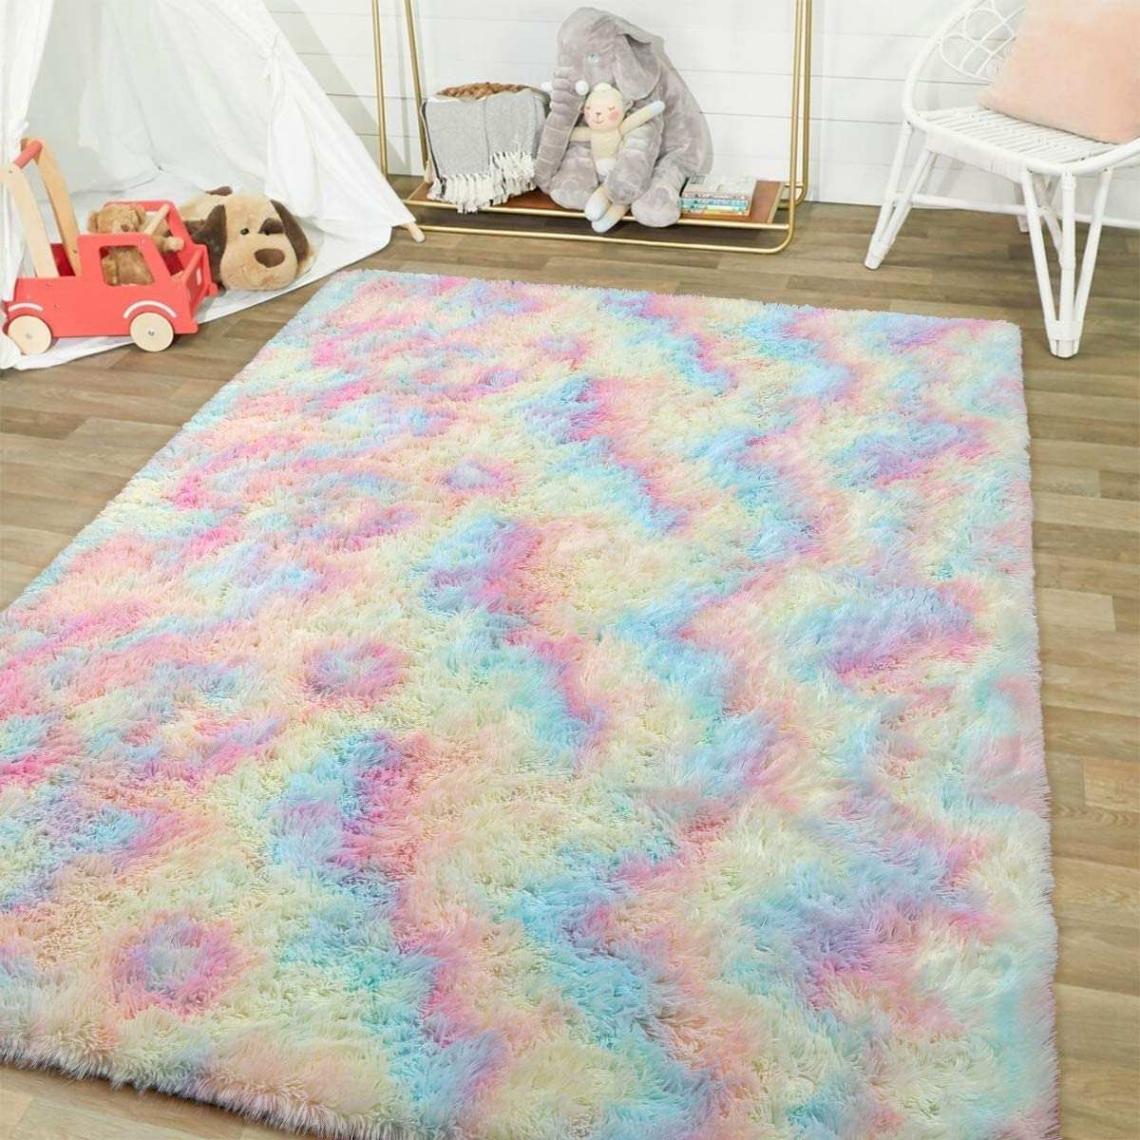 Universal - Gradient couleur peluche tapis souple zone épaisse tapis absorbant l'eau tapis de sol antidérapant chambre salon décoration de la maison | Tapis(Coloré) - Tapis